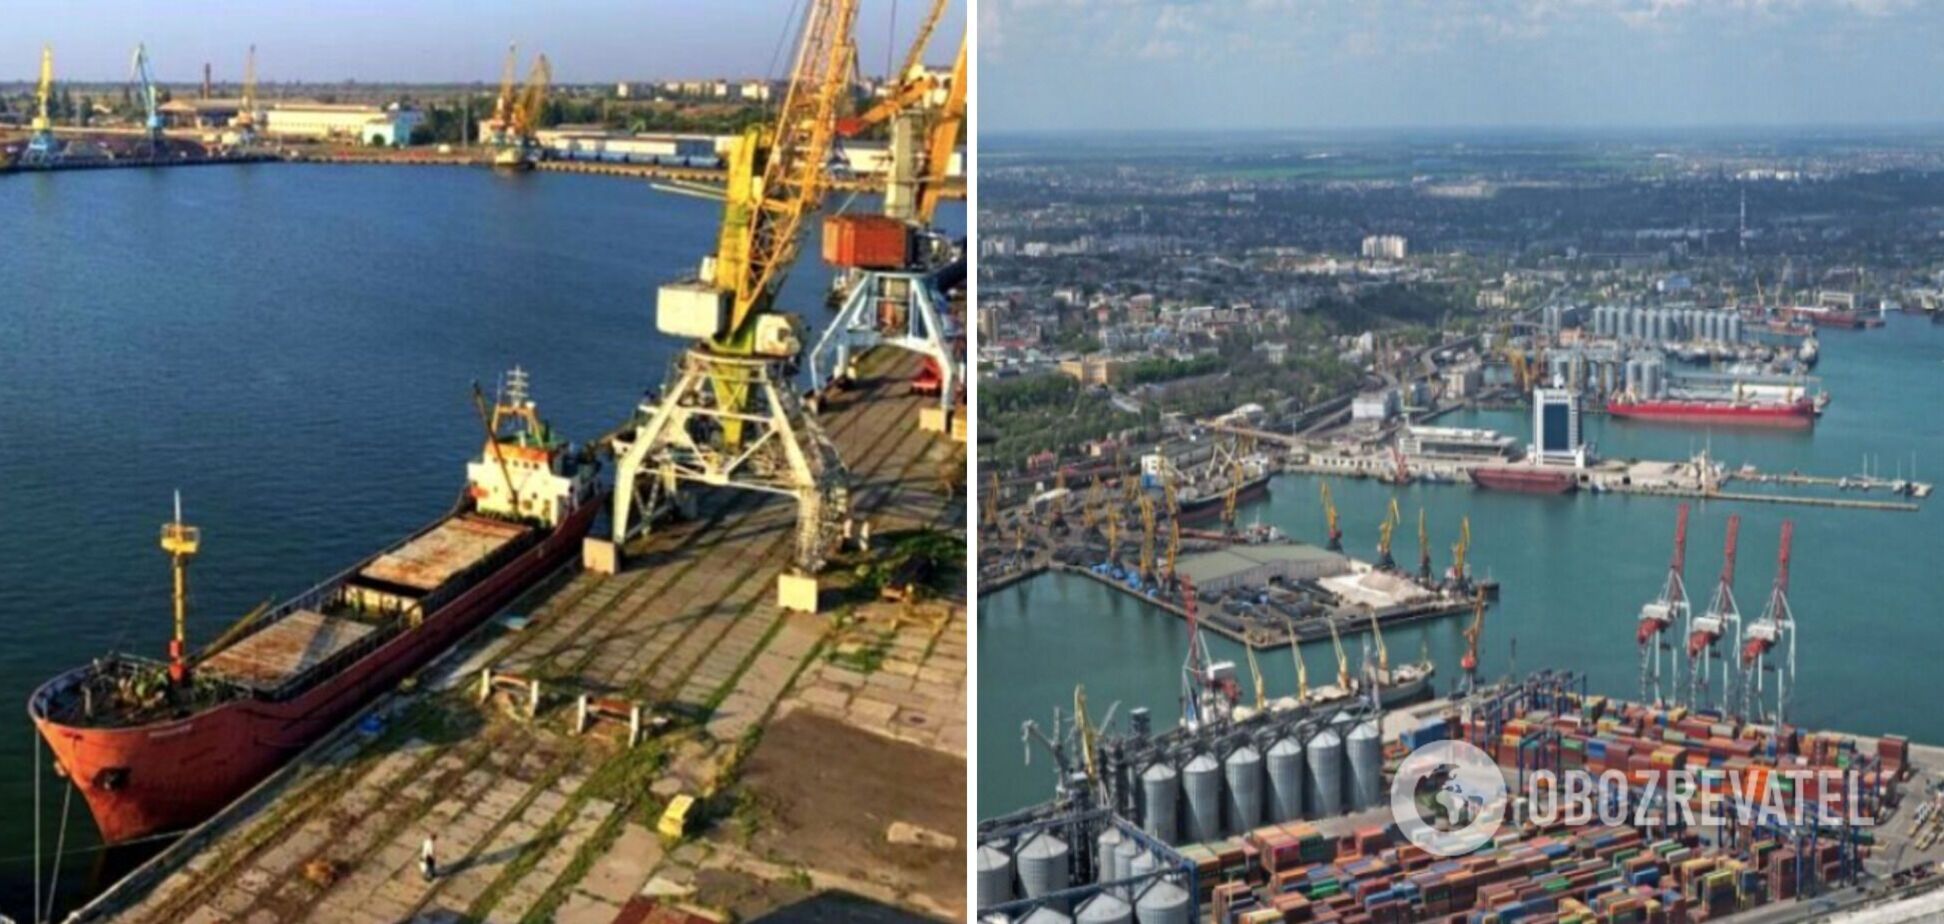 Розблокування портів допоможе здешевити імпортні товари та знизить інфляцію, – Гардус